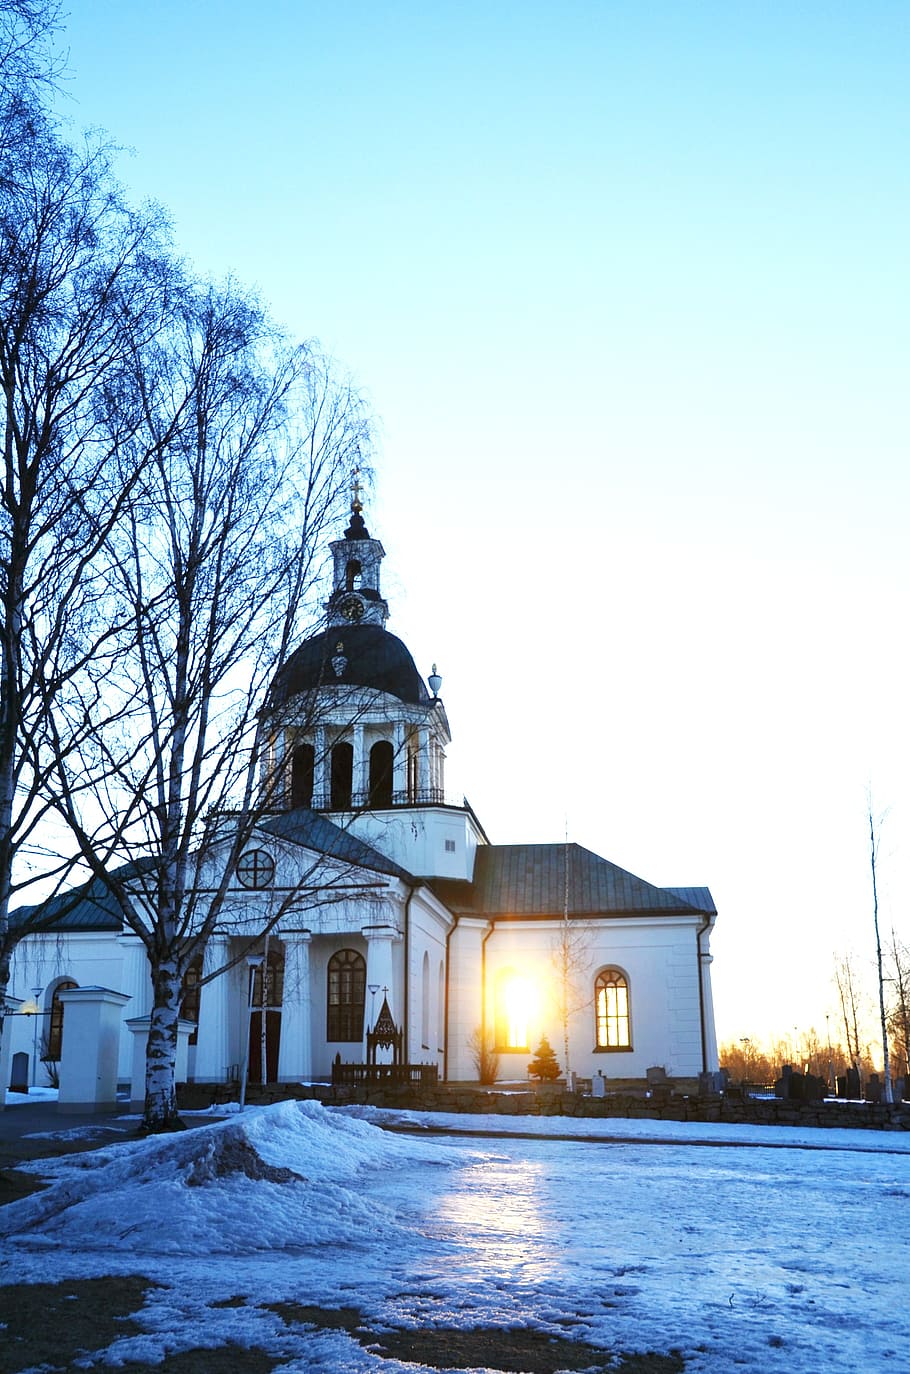 skellefteå, la iglesia de Landskyrkan, ventana, luz, exterior del edificio, arquitectura, estructura construida, cielo, nieve, temperatura fría